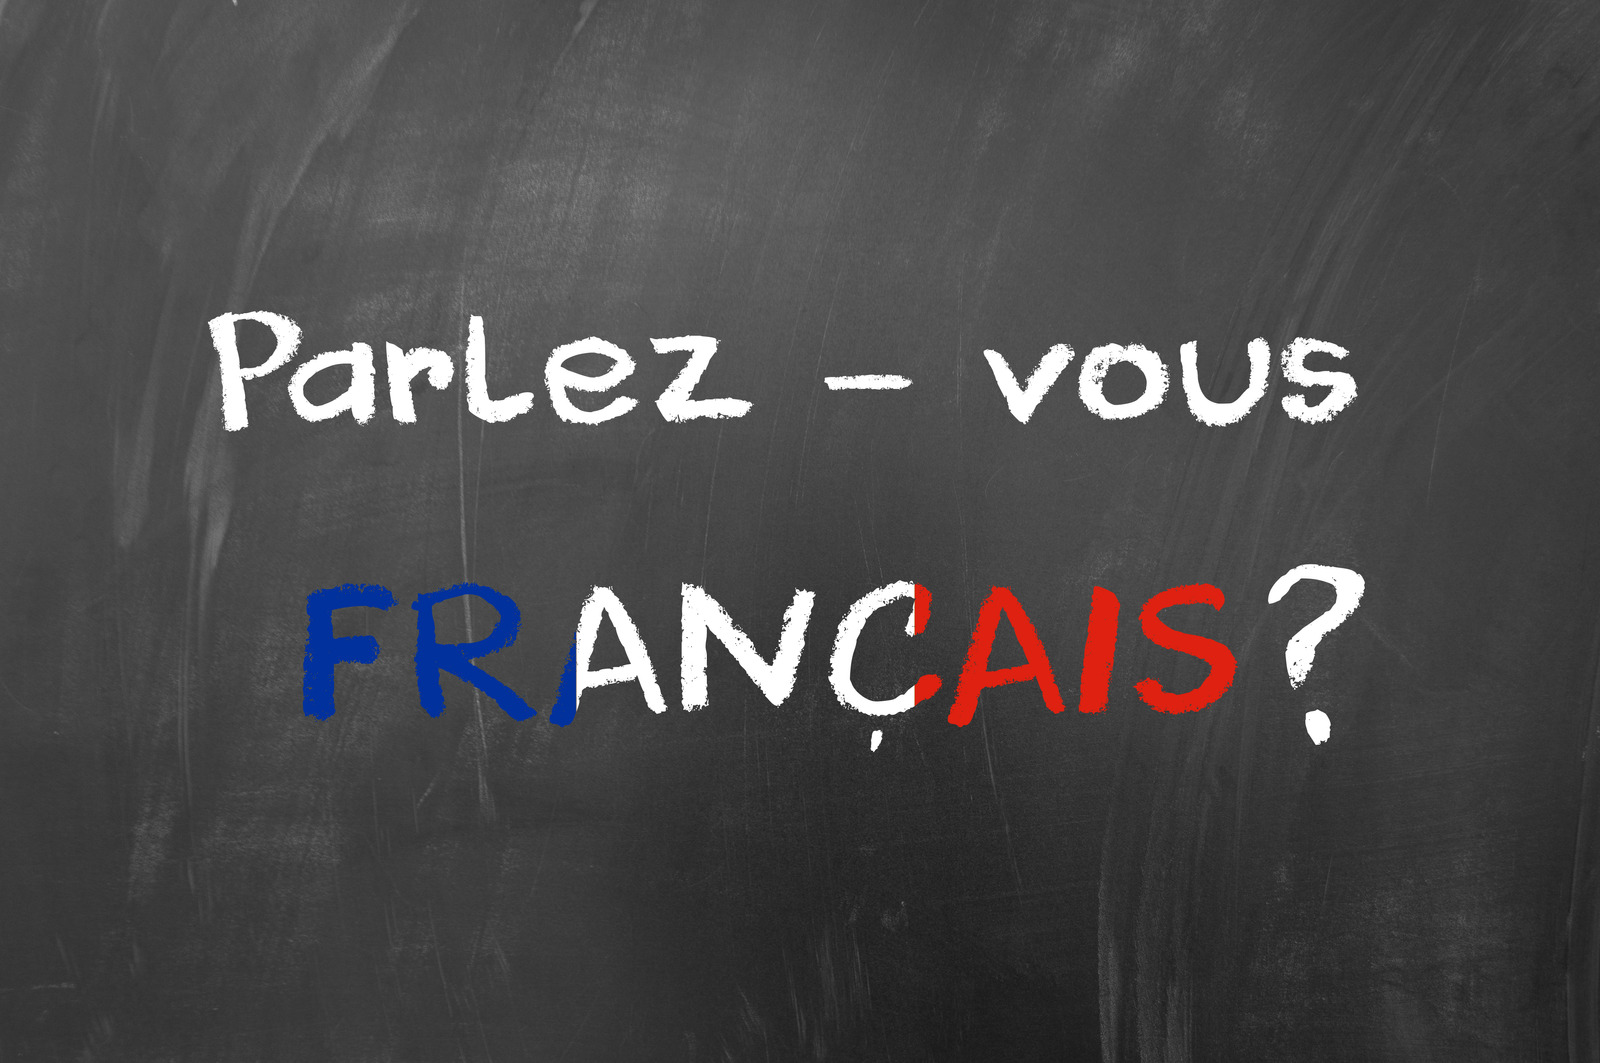 ترجمة من الفرنسية إلى العربية بالصوت جوجل: هل هناك بدائل أفضل؟